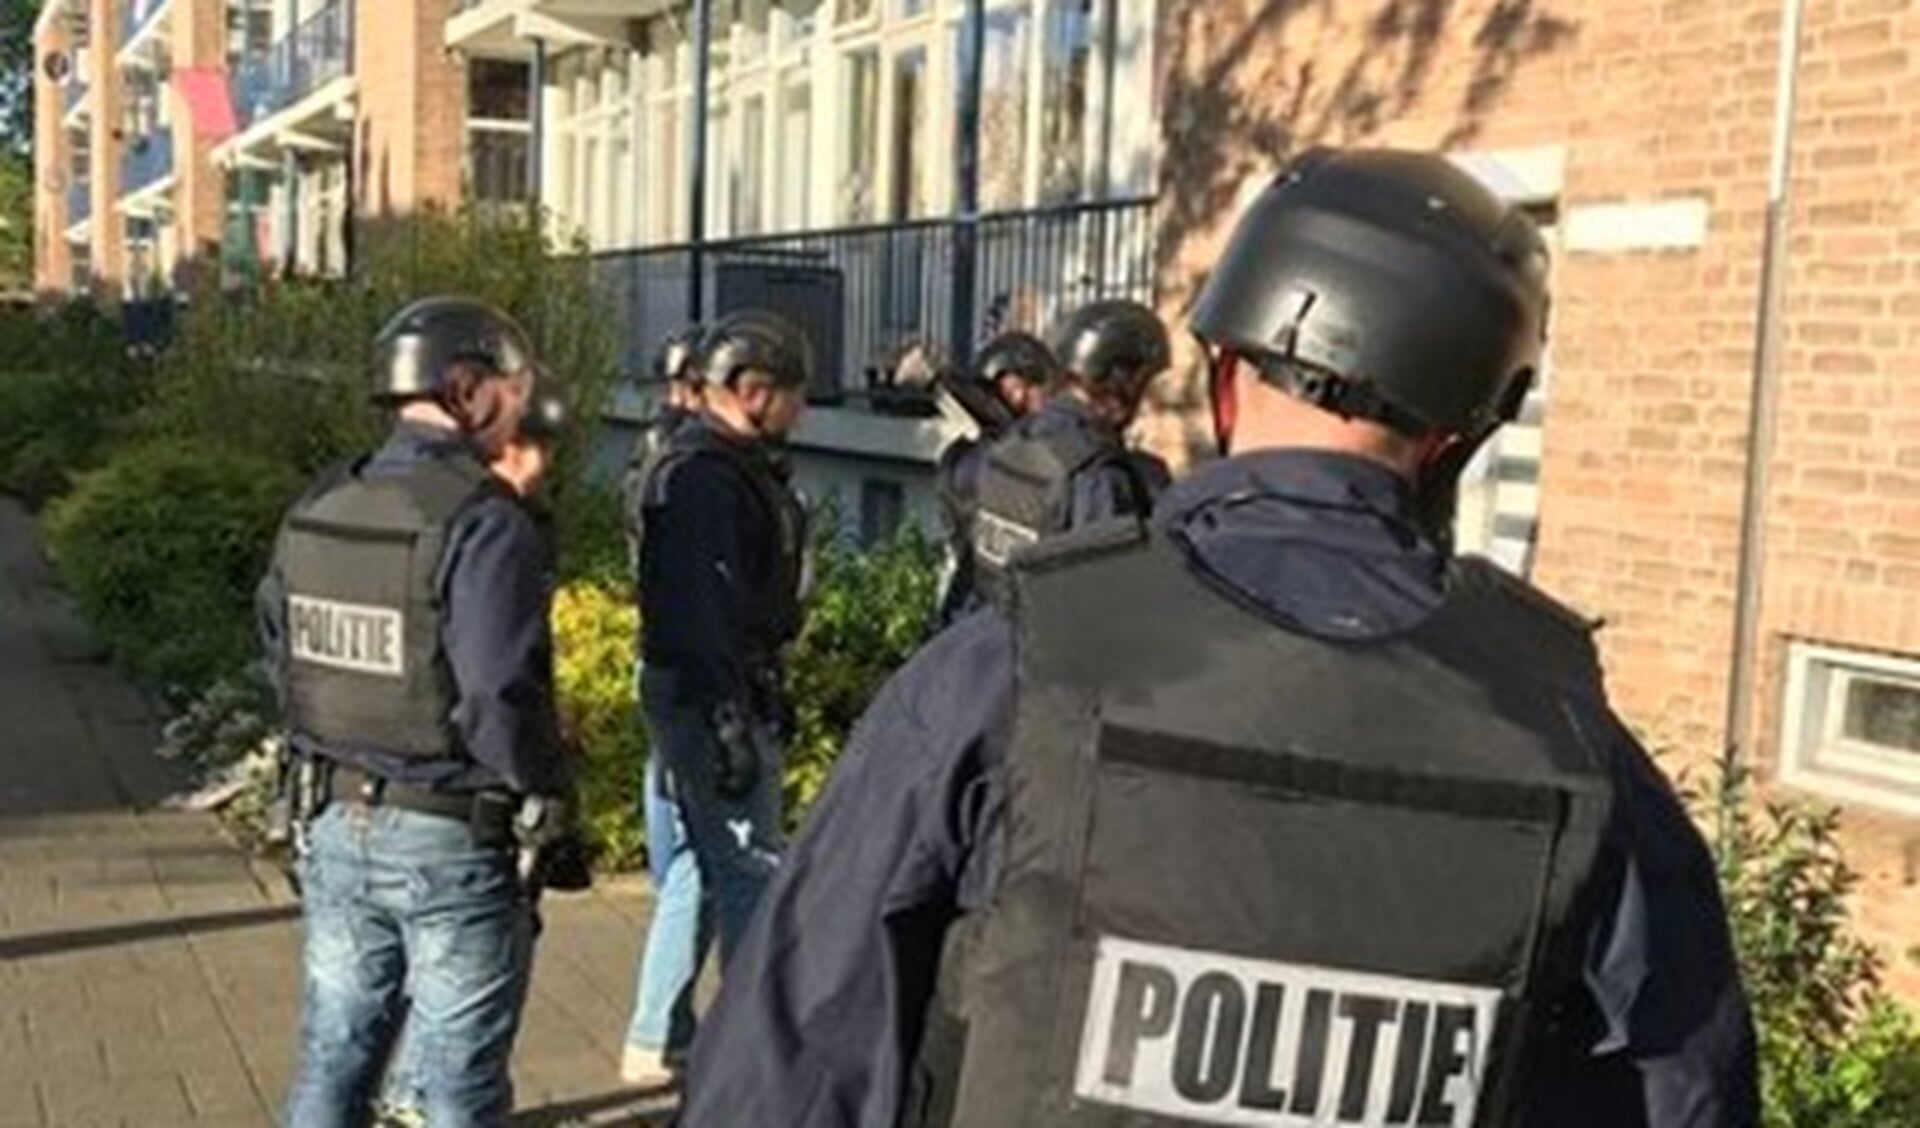 De politie deed ook invallen in Voorburg in verband met het opsporingsonderzoek van de politie naar illegale prostitutie (foto: politie).